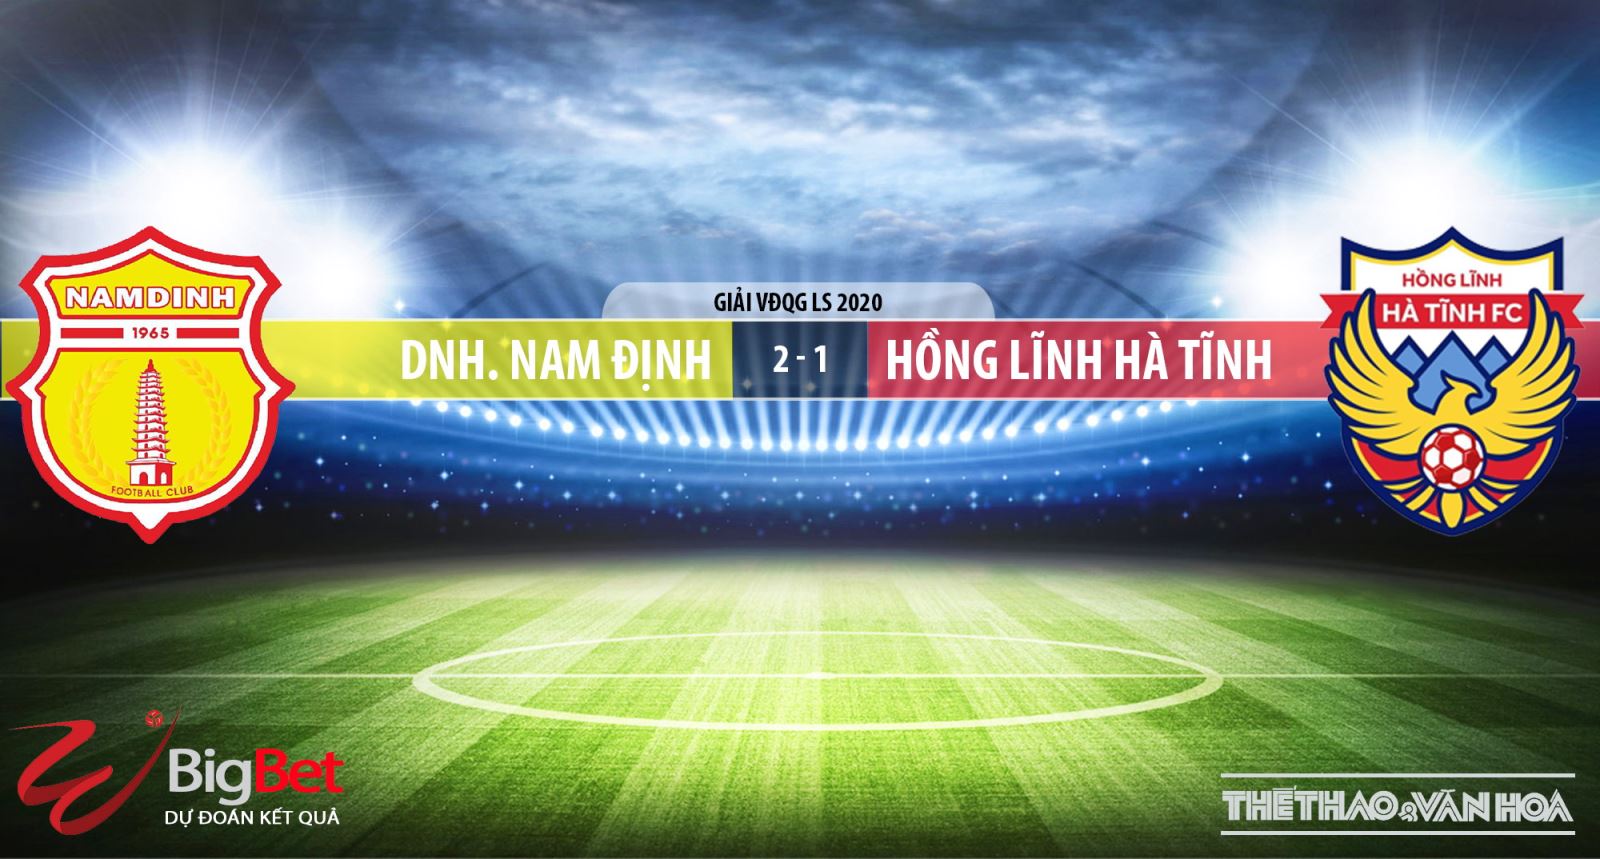 Soi kèo nhà cái Nam Định đấu với Hà Tĩnh. VTV6 trực tiếp bóng đá V League 2020. Trực tiếp bóng đá Việt Nam hôm nay: Nam Định vs Hồng Lĩnh Hà Tĩnh. Xem bóng đá trực tuyến VTV6, VTV5, Bóng đá TV, Thể thao tin tức HD (TTTT HD).